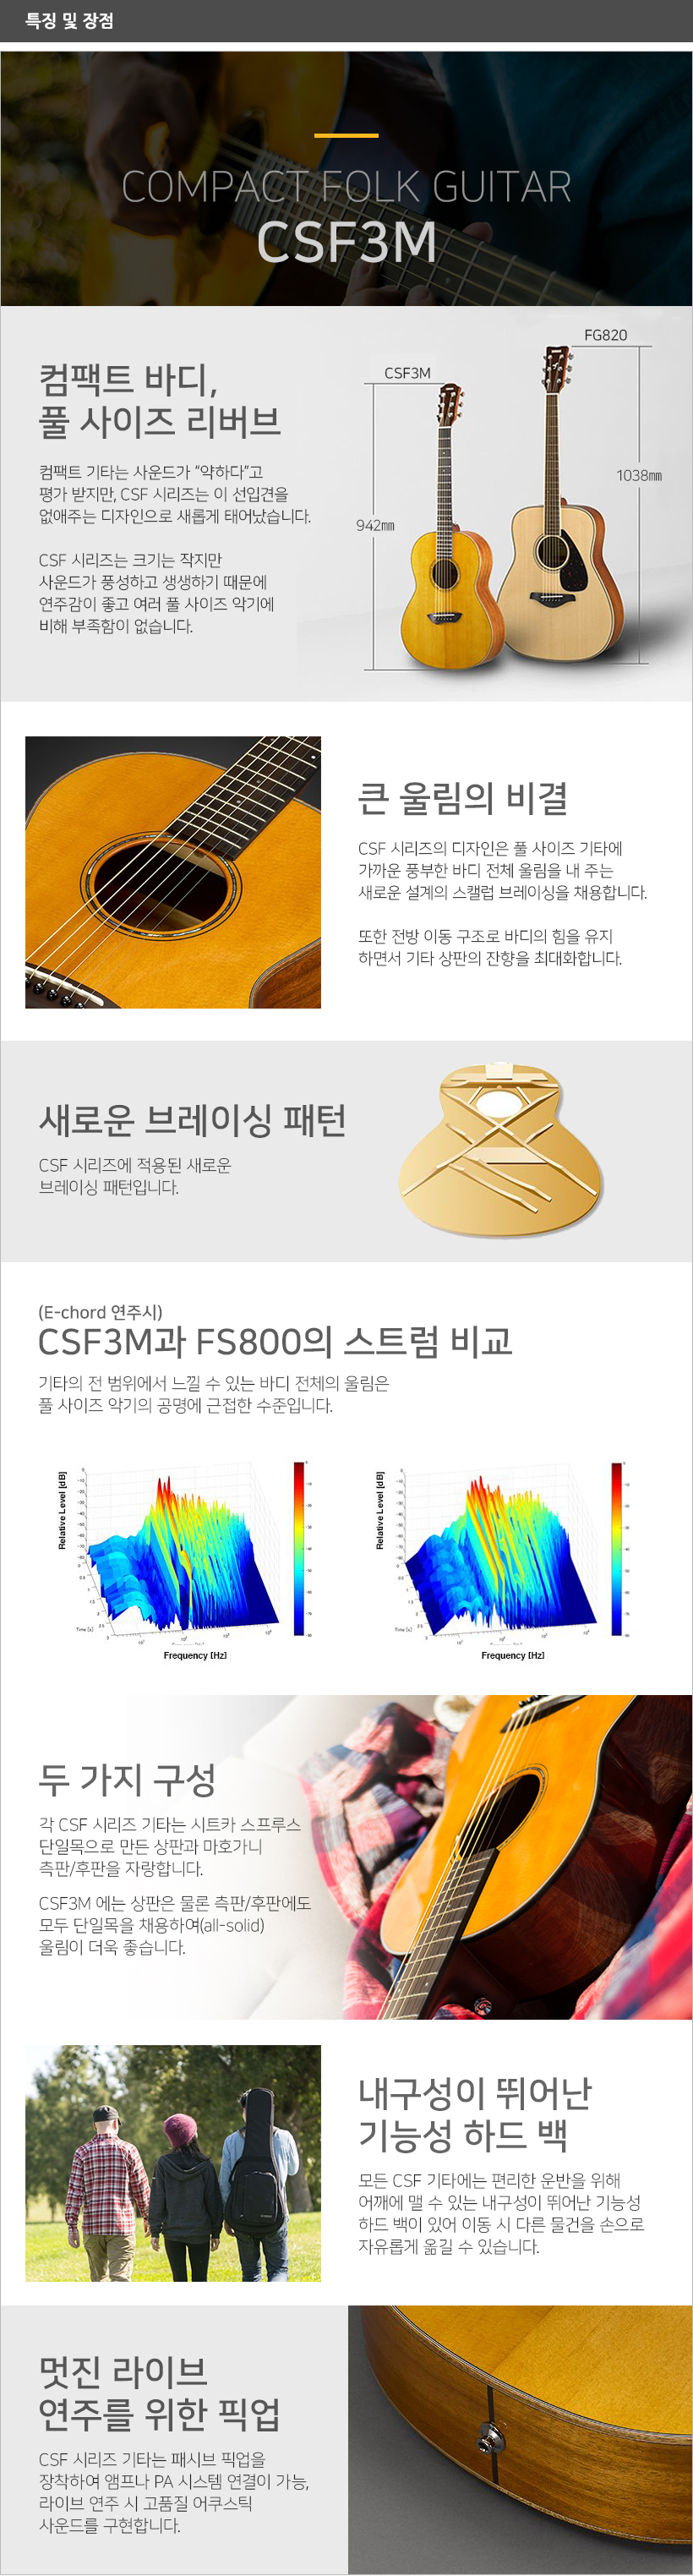 CSF3M 특징 및 장점